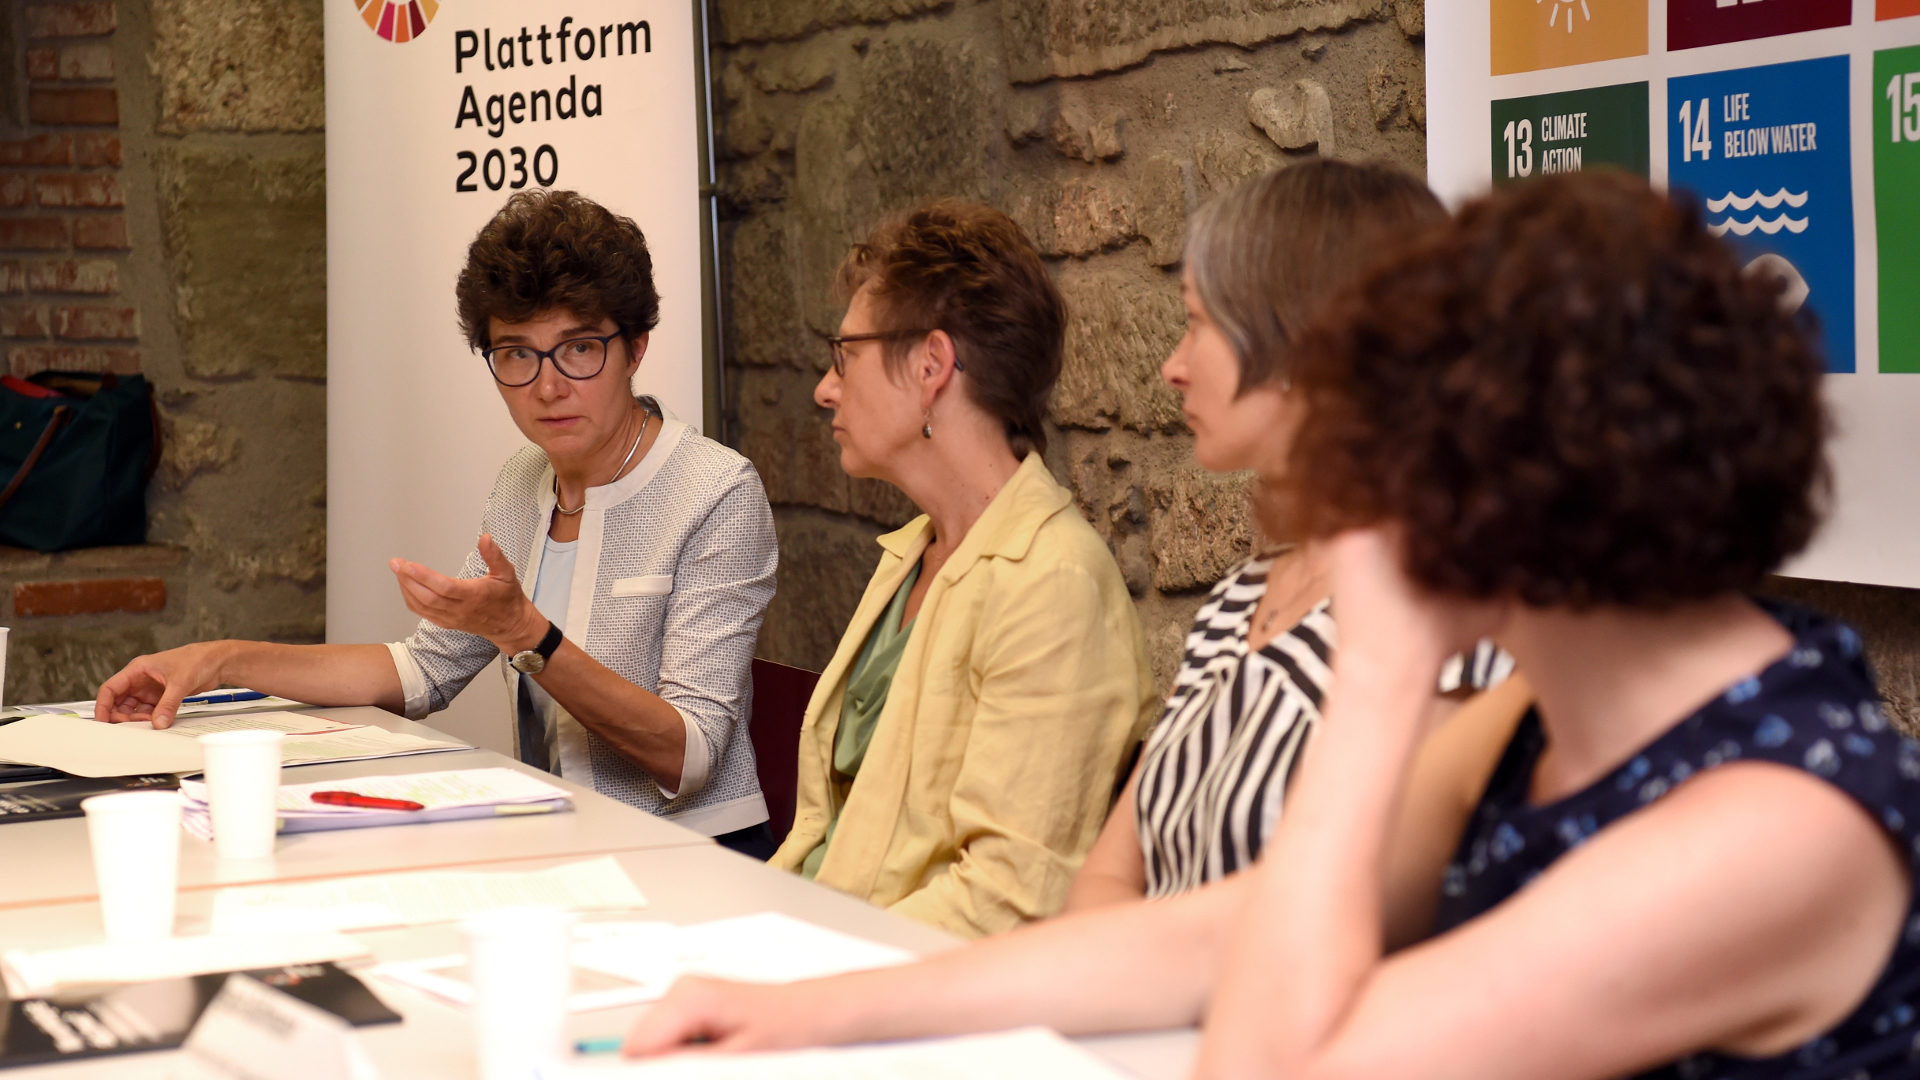 Vertreterinnen der "Plattform Agenda 2030" an der Pressekonferenz in Bern